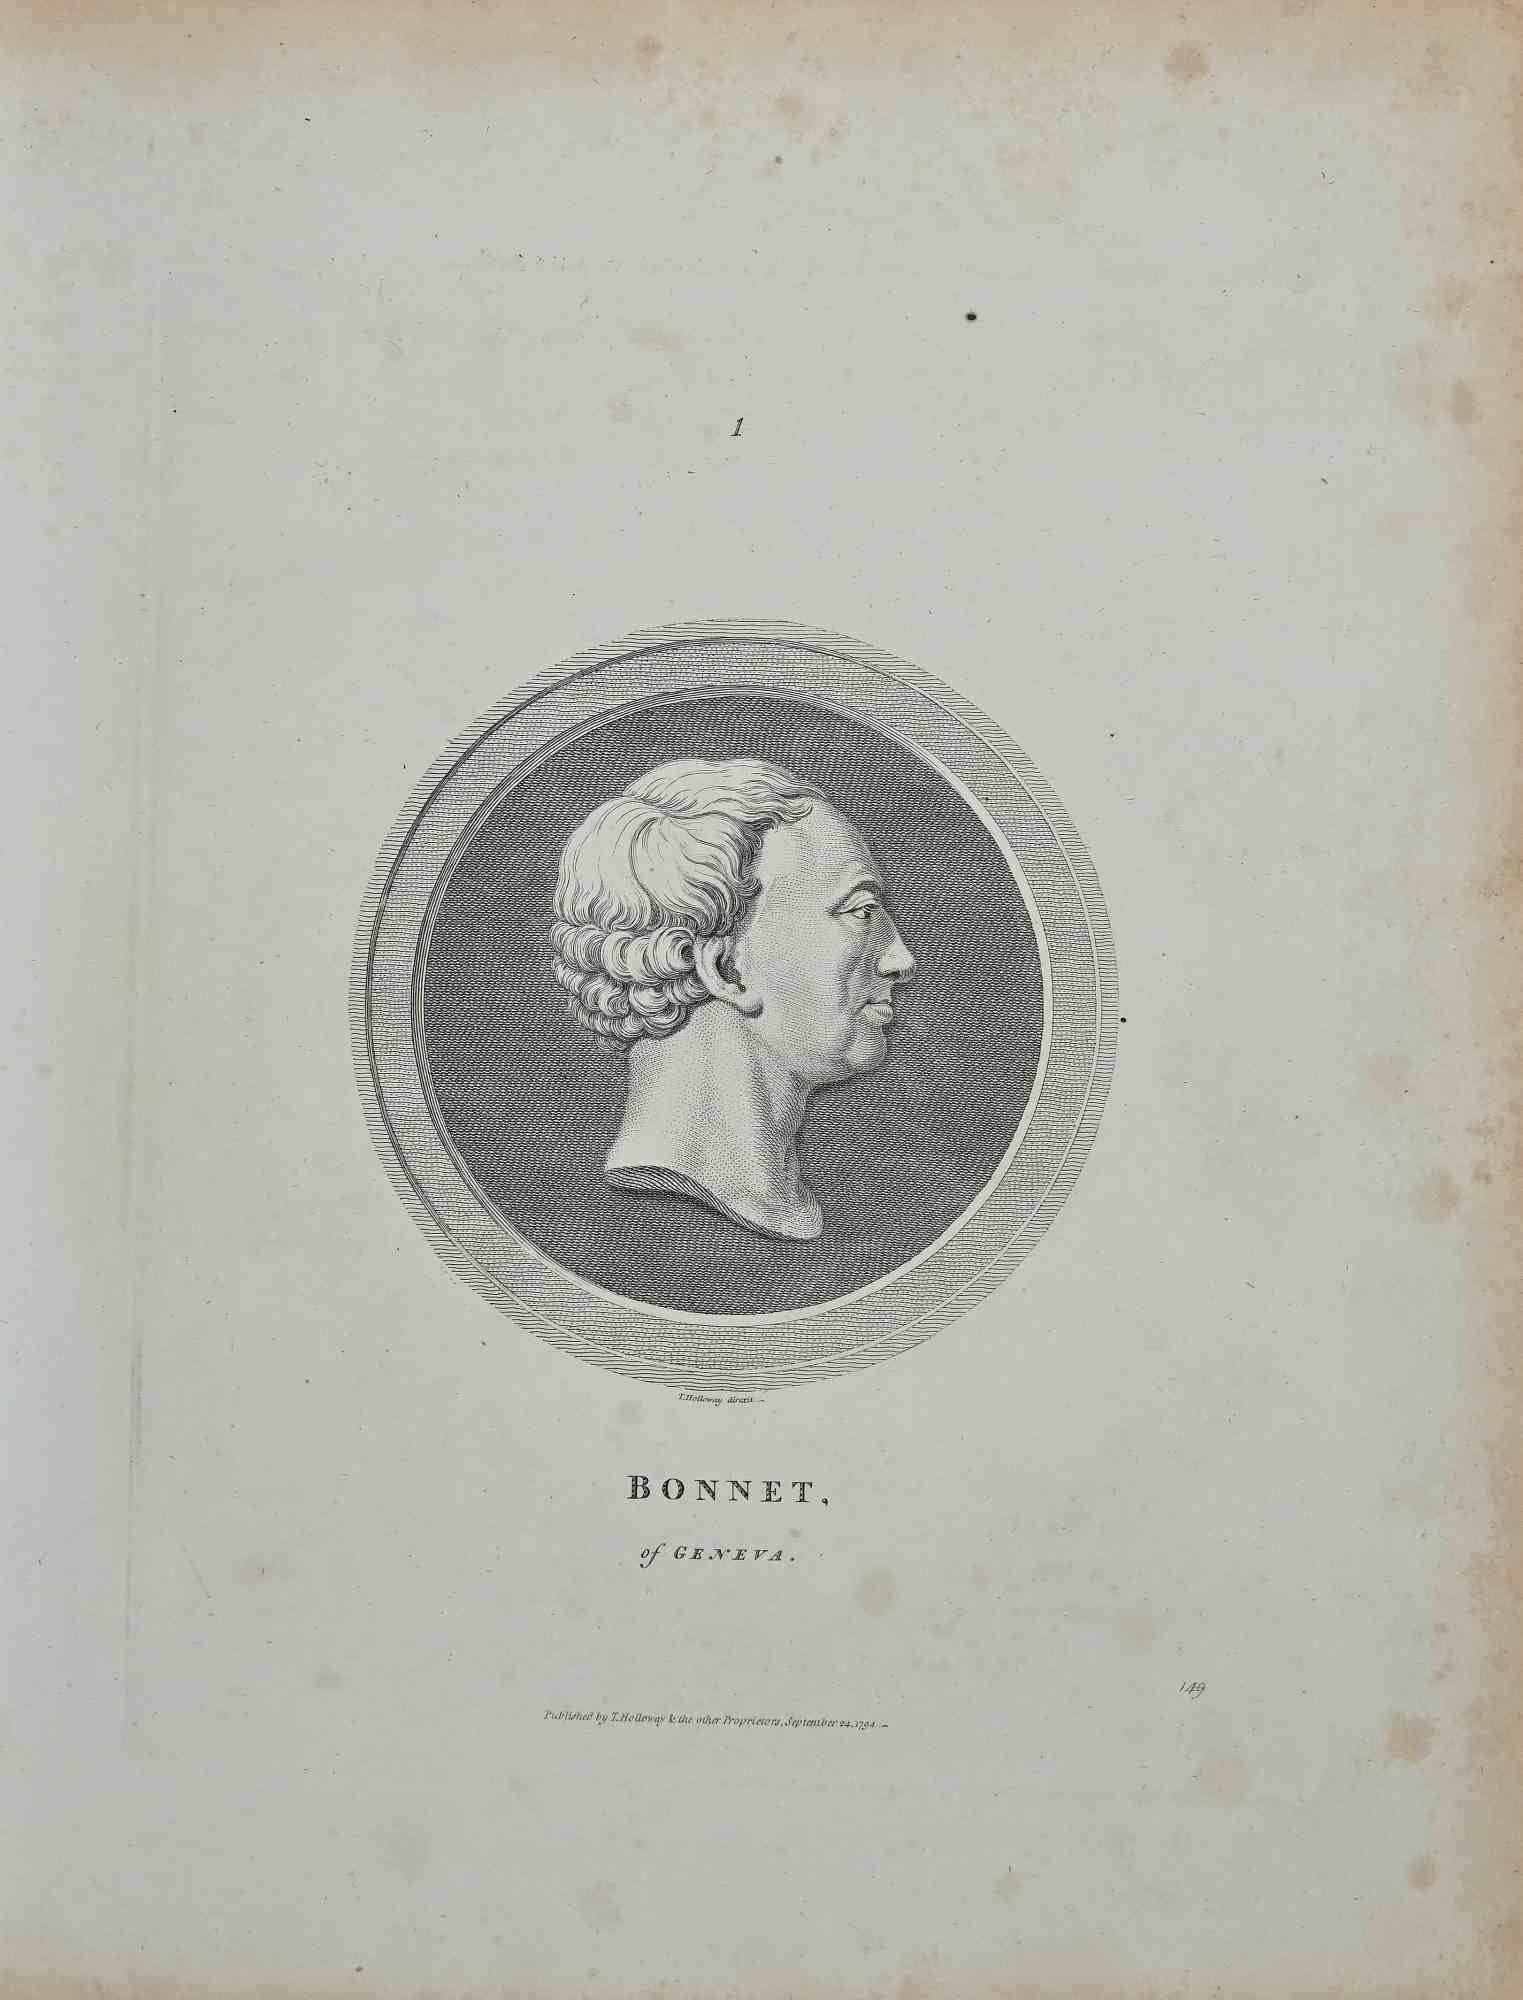 Portrait Bonnet de Genève est une gravure originale réalisée par Thomas Holloway pour les "Essais sur la physiognomonie, destinés à promouvoir la connaissance et l'amour de l'humanité" de Johann Caspar Lavater, Londres, Bensley, 1810. 

Signé en